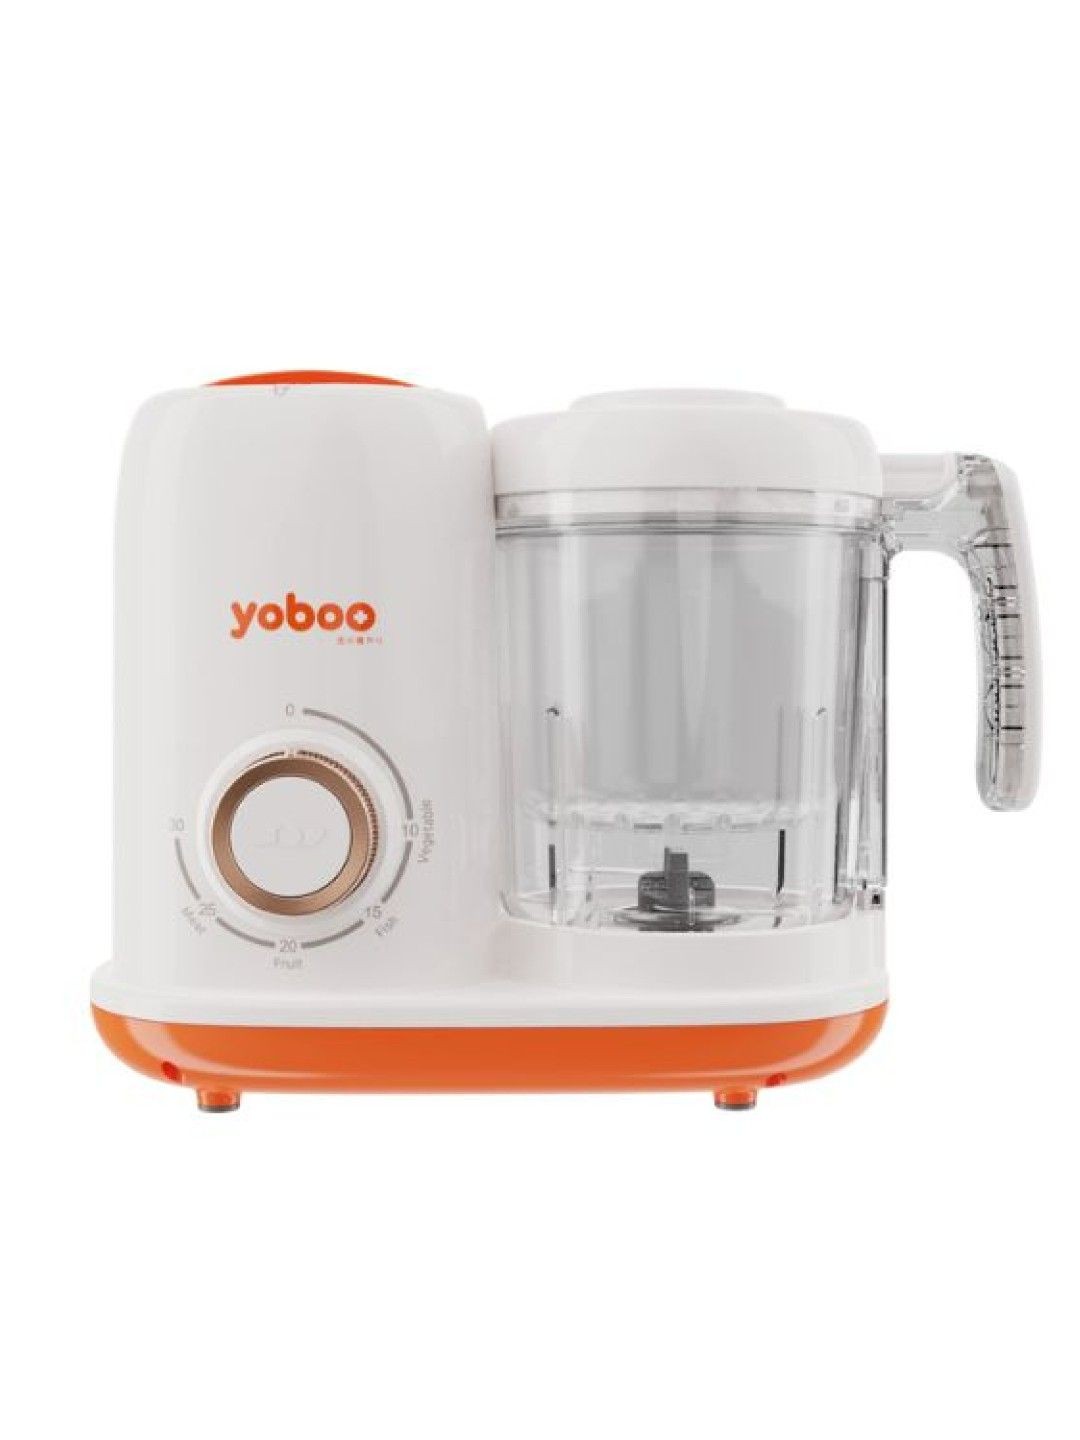 Yoboo Multifunctional Baby Food Processor